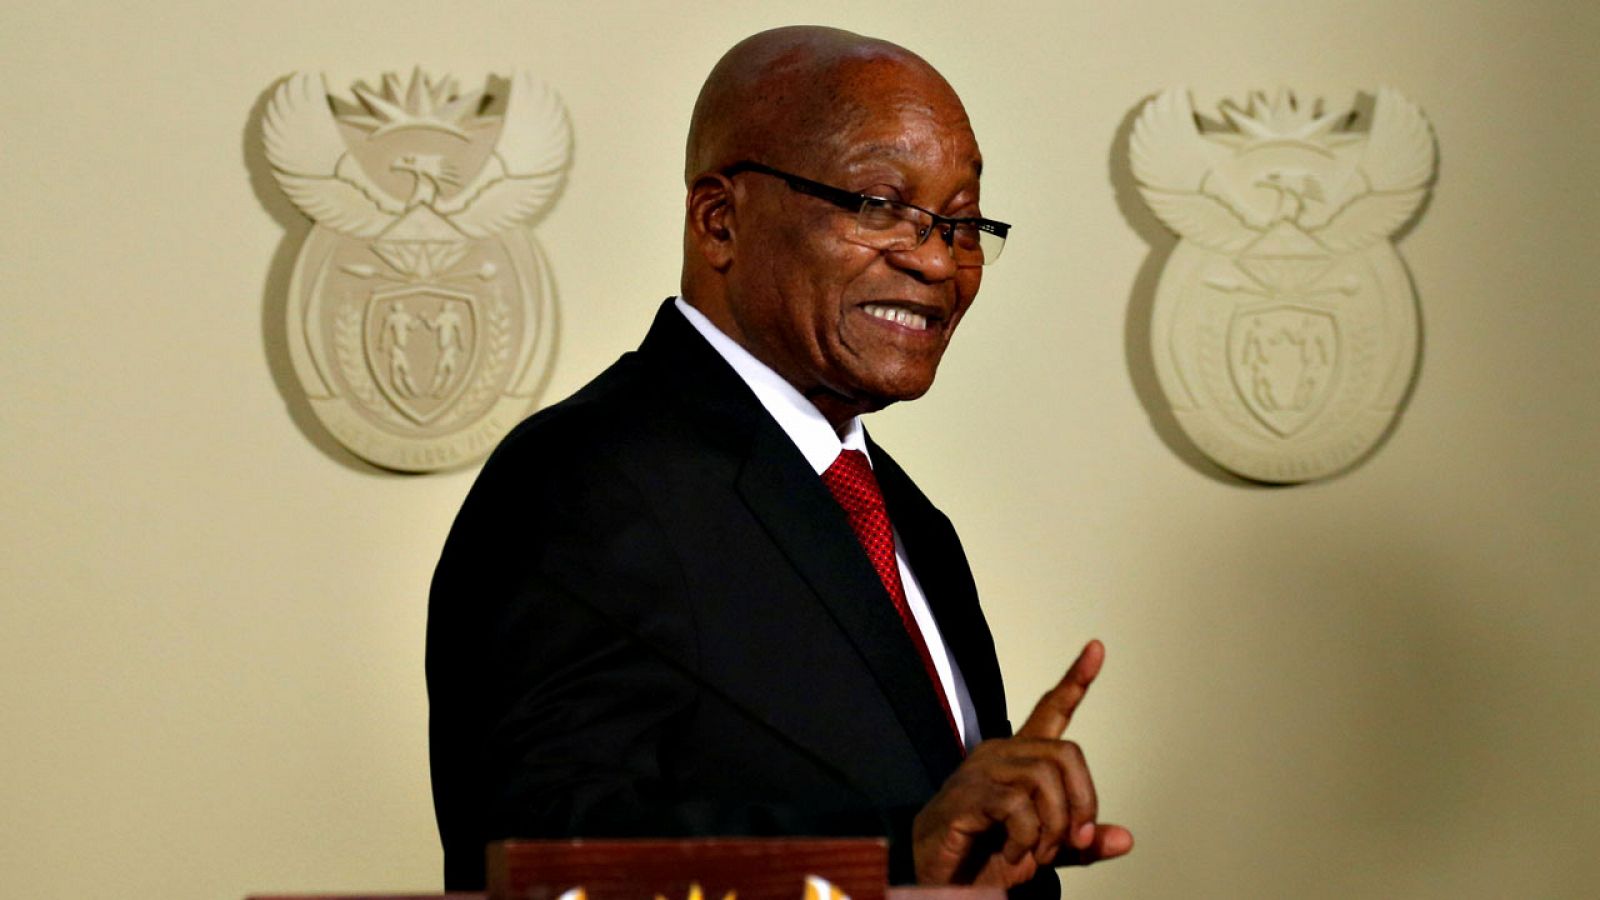 El expresidente de Sudáfrica, Jacob Zuma, tras anunciar su renuncia al cargo